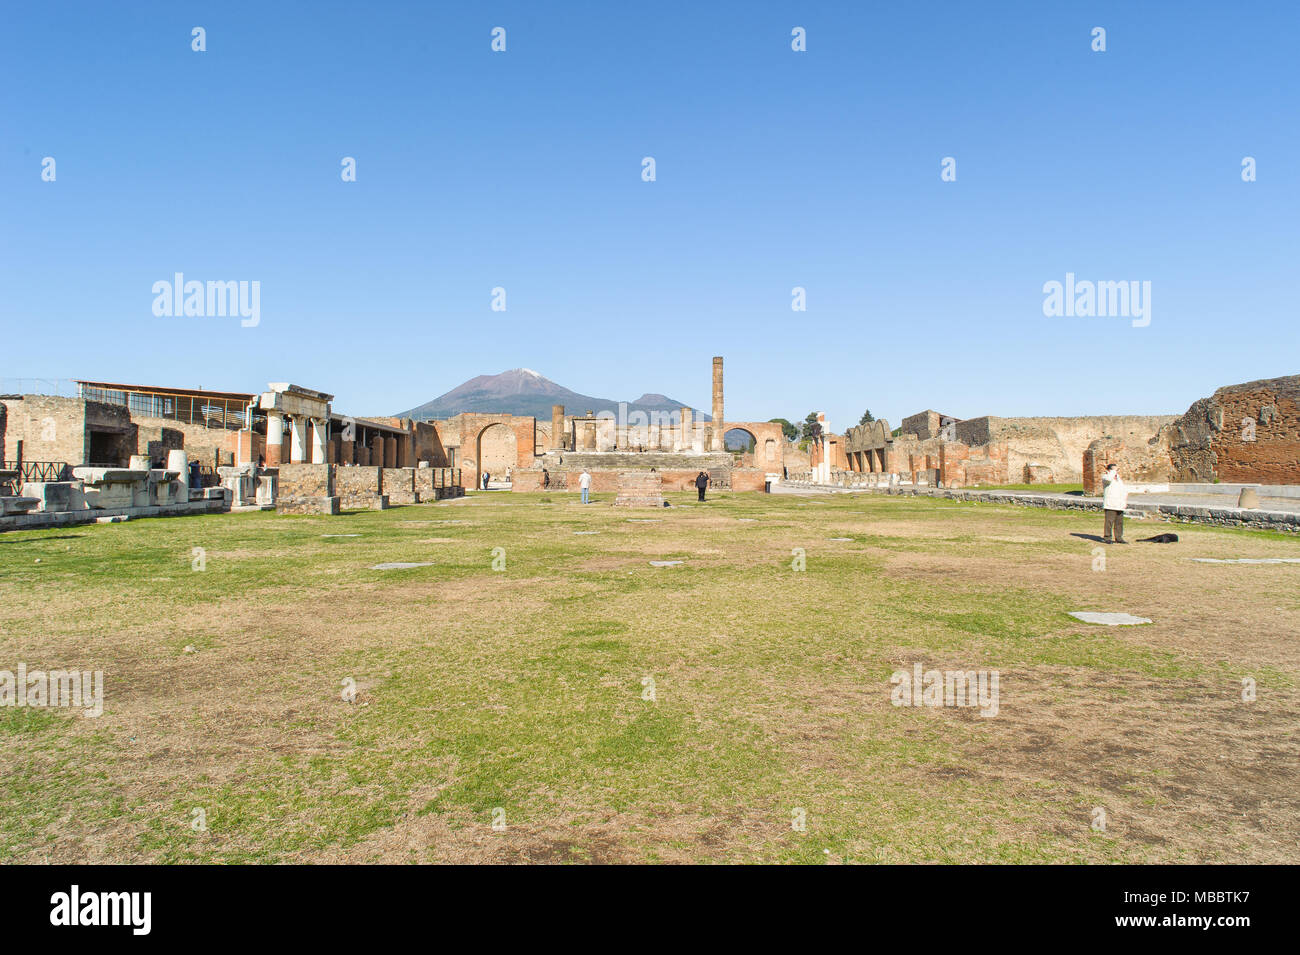 Neapel, Italien - Januar 19, 2010: Tempel des Jupiter mit dem Berg Vesuv in Pompeji ruiniert. Pompeji ist eine Ruine der antike römische Stadt in der Nähe von Neapel in Italien. Stockfoto